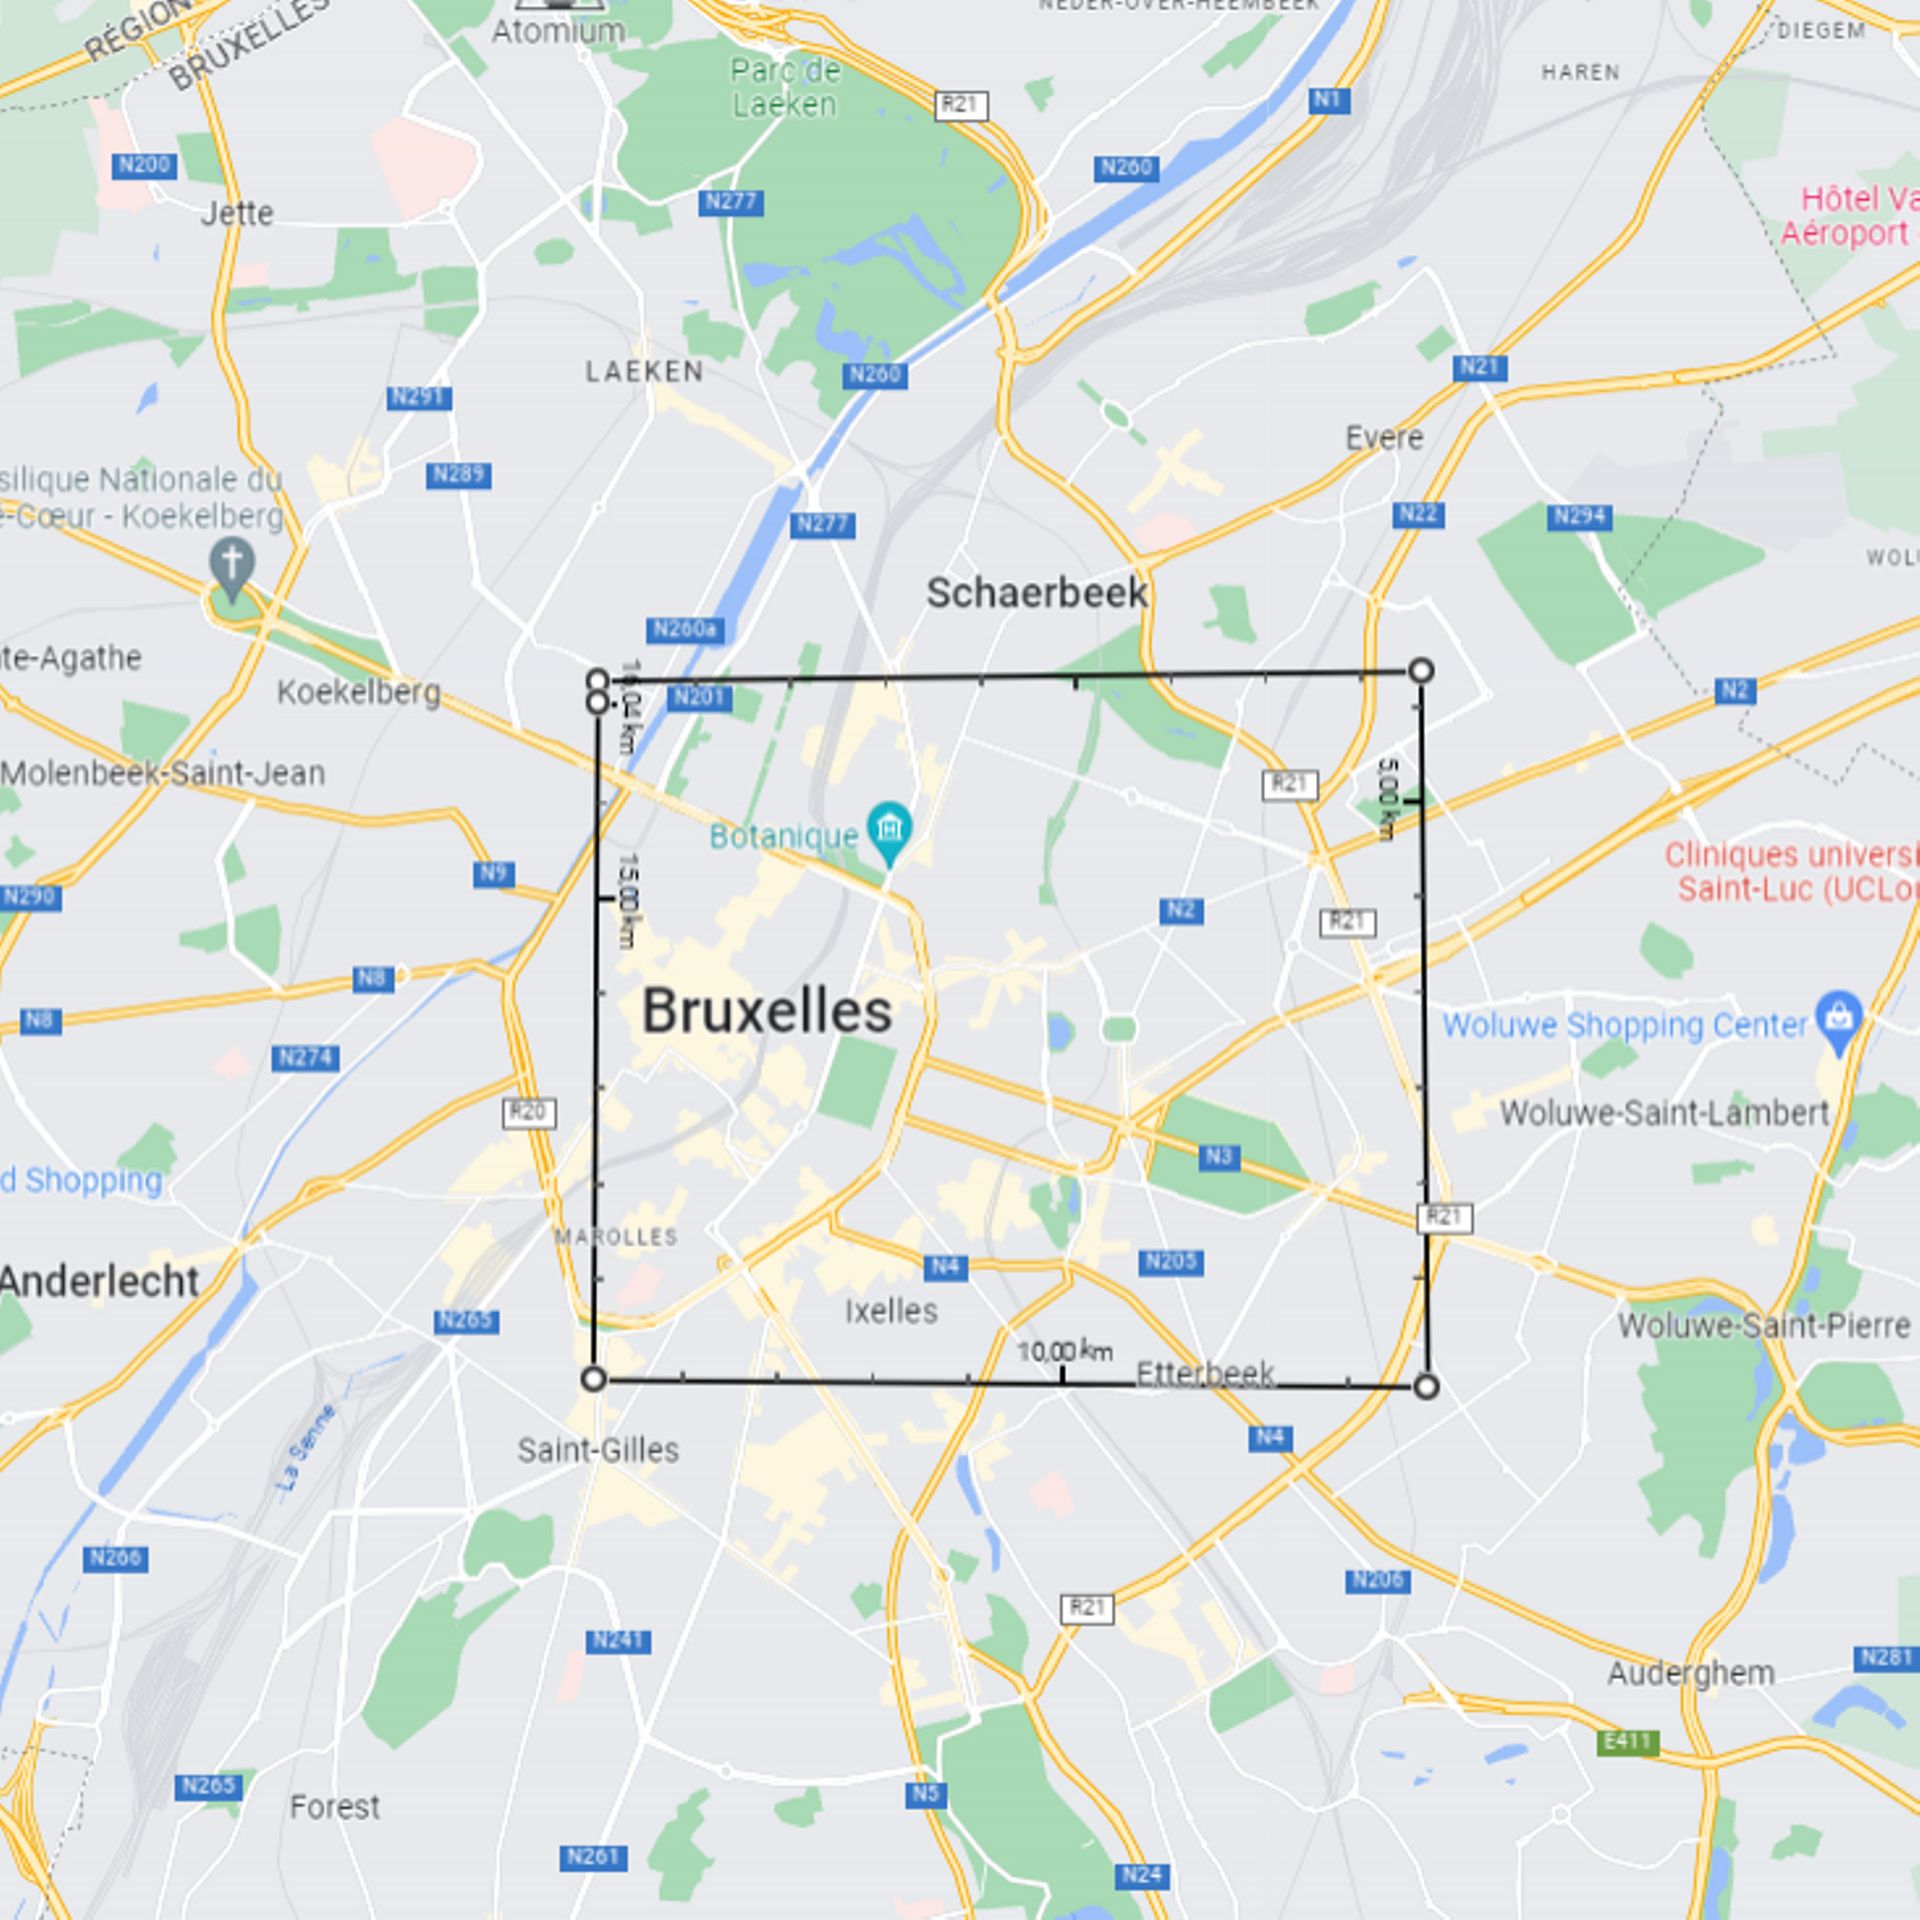 Estimation d’une distance d’environ 4 km x 4 km à Bruxelles.